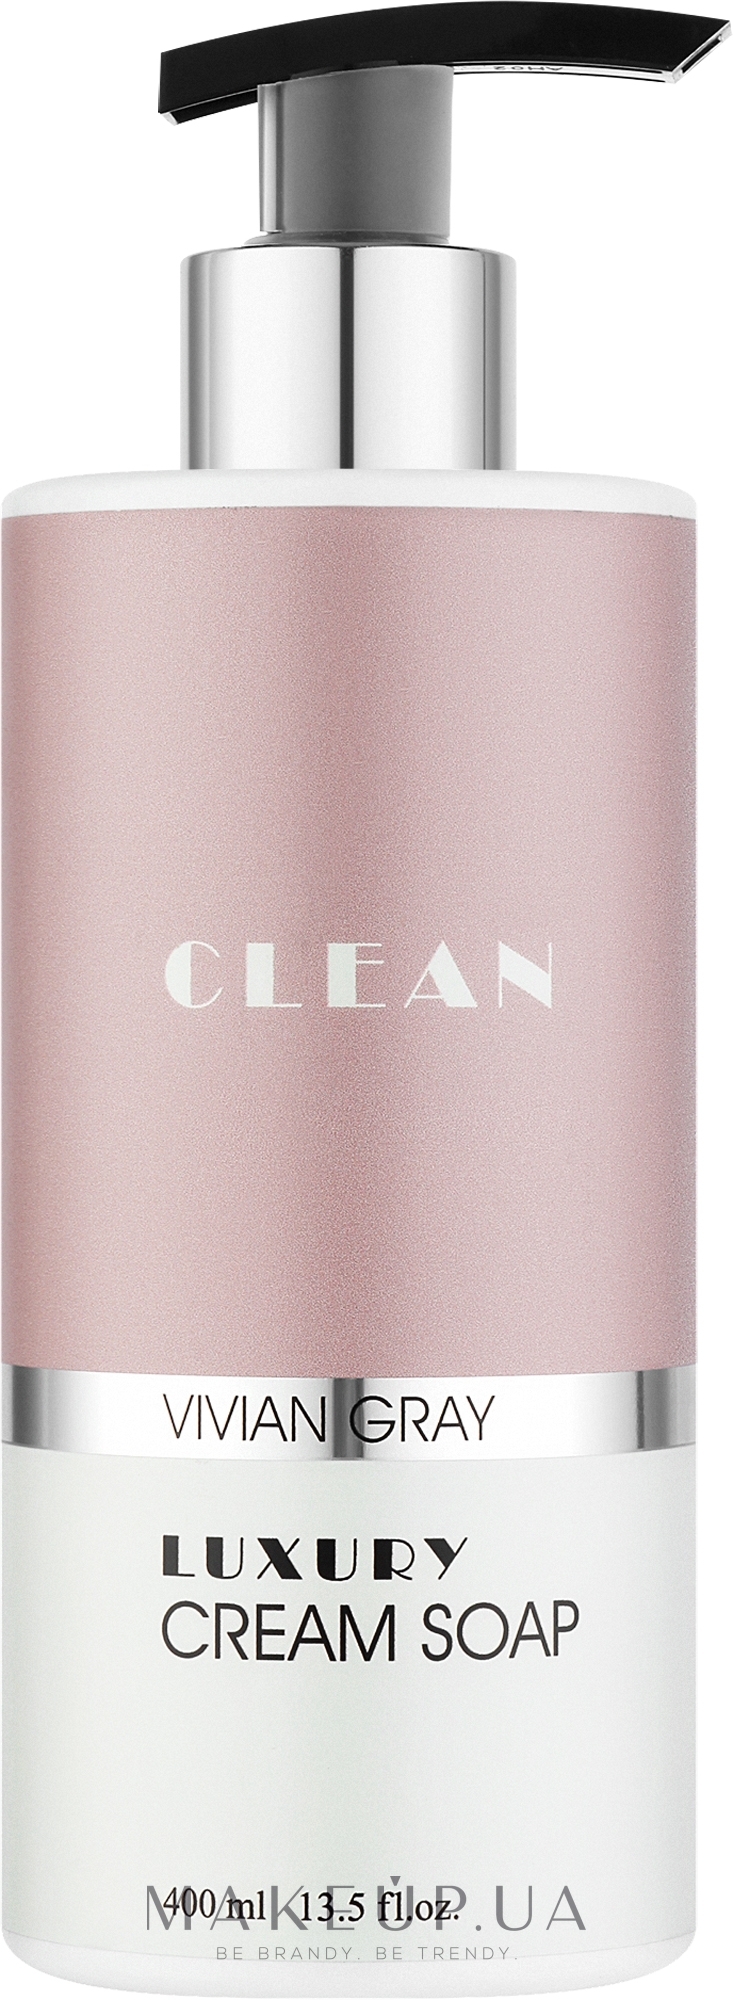 Крем-мыло для рук - Vivian Gray Clean Luxury Cream Soap — фото 400ml